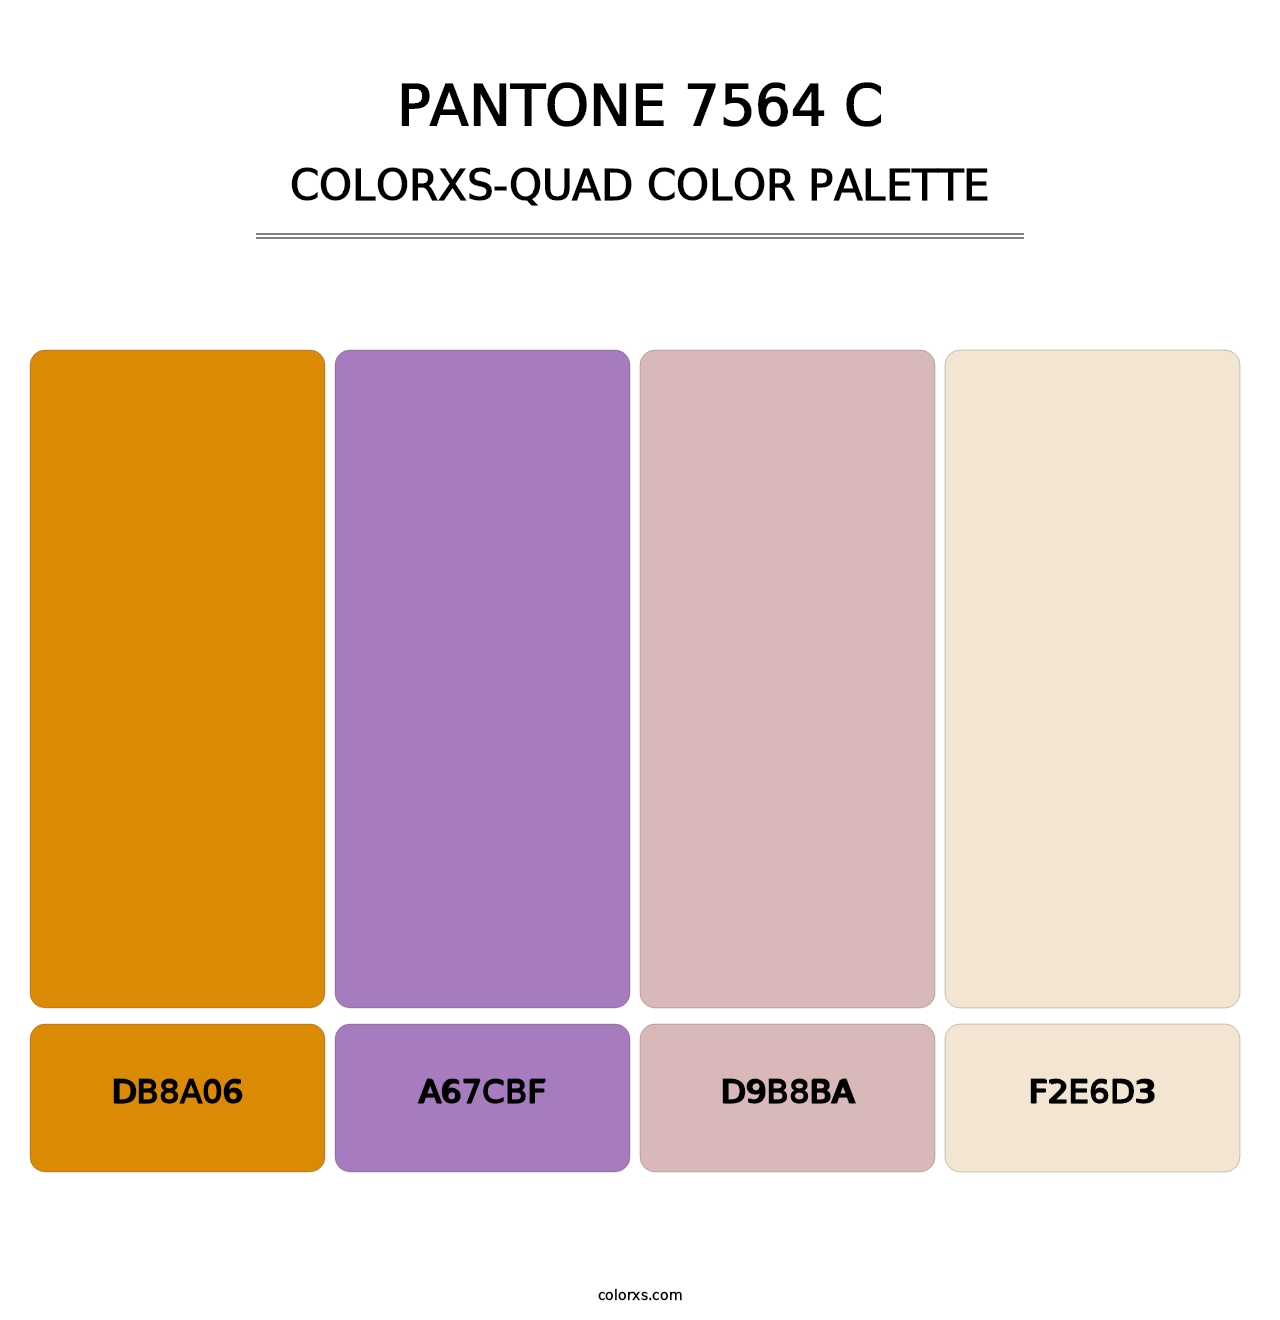 PANTONE 7564 C - Colorxs Quad Palette